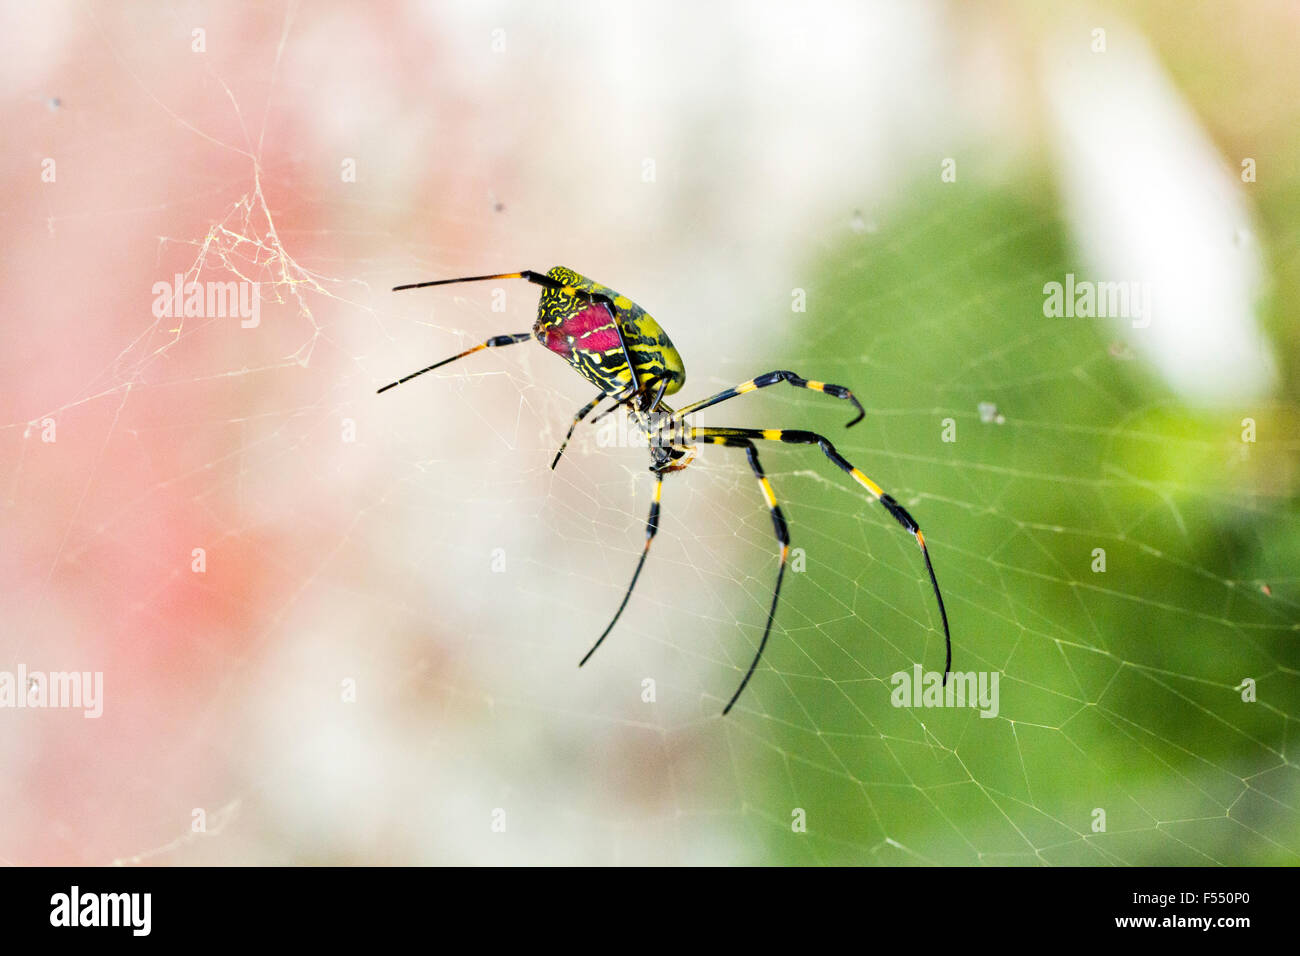 Le Japon. grande araignée rouge et jaune. Tetragnathidae, Nephila clavata, araignée Joro du Globe Doré-Spider web groupe. Close up, femme, debout dans le web. Banque D'Images